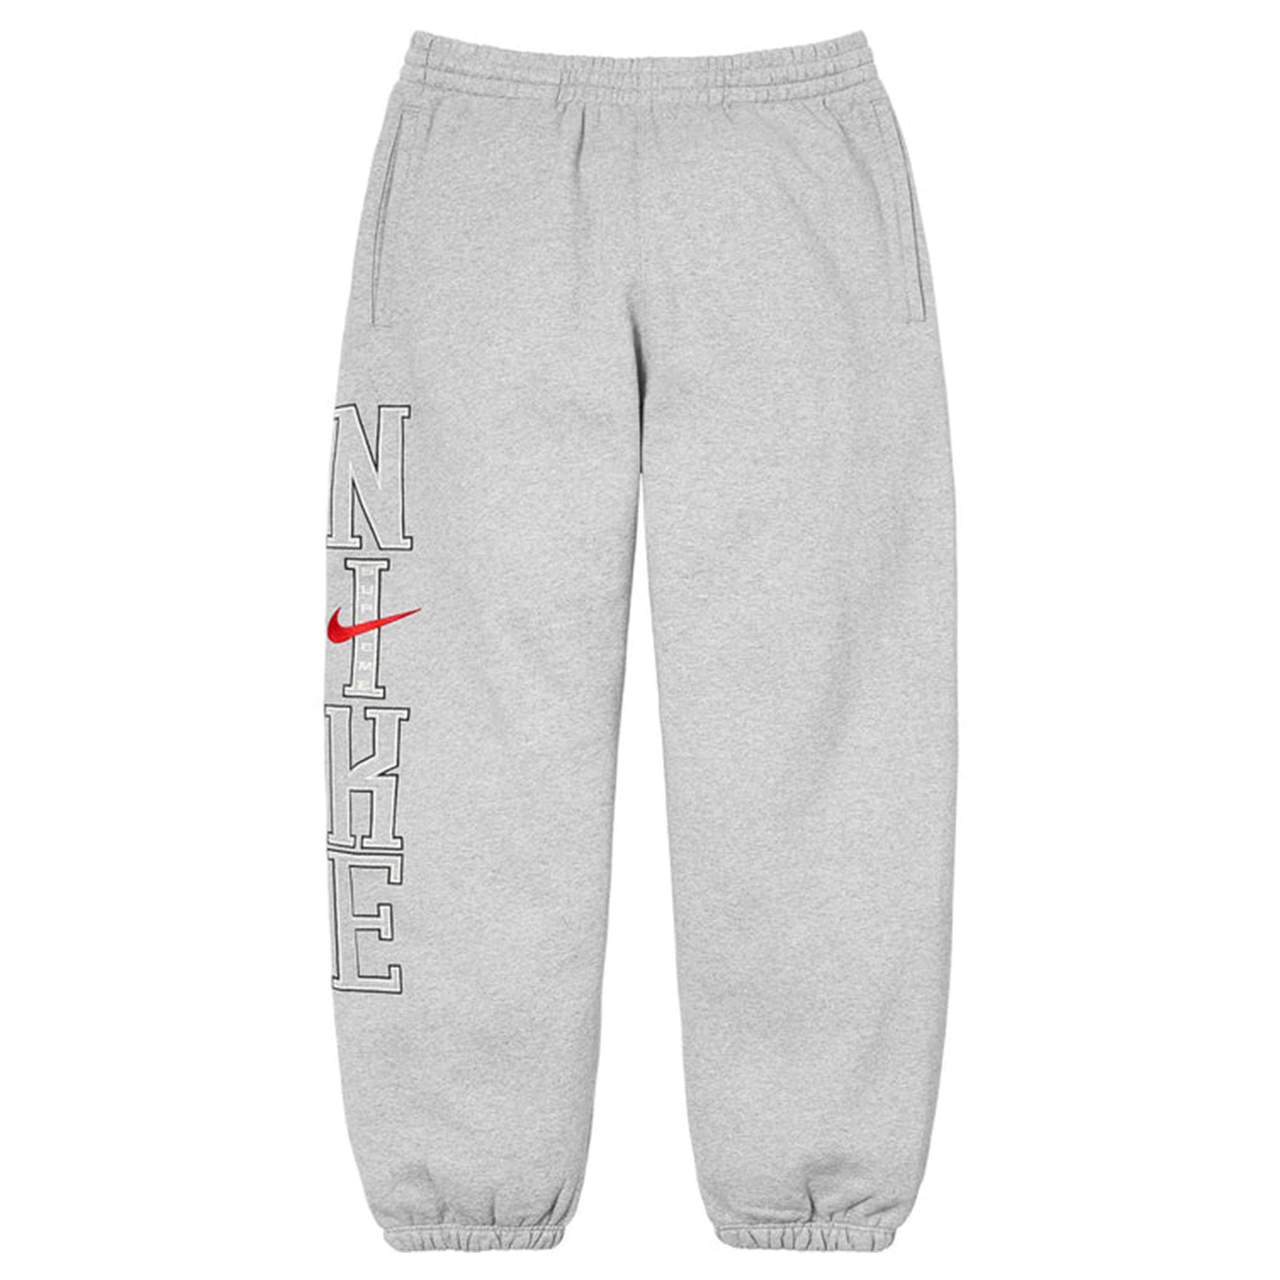 Supreme x Nike Sweatpants Grey